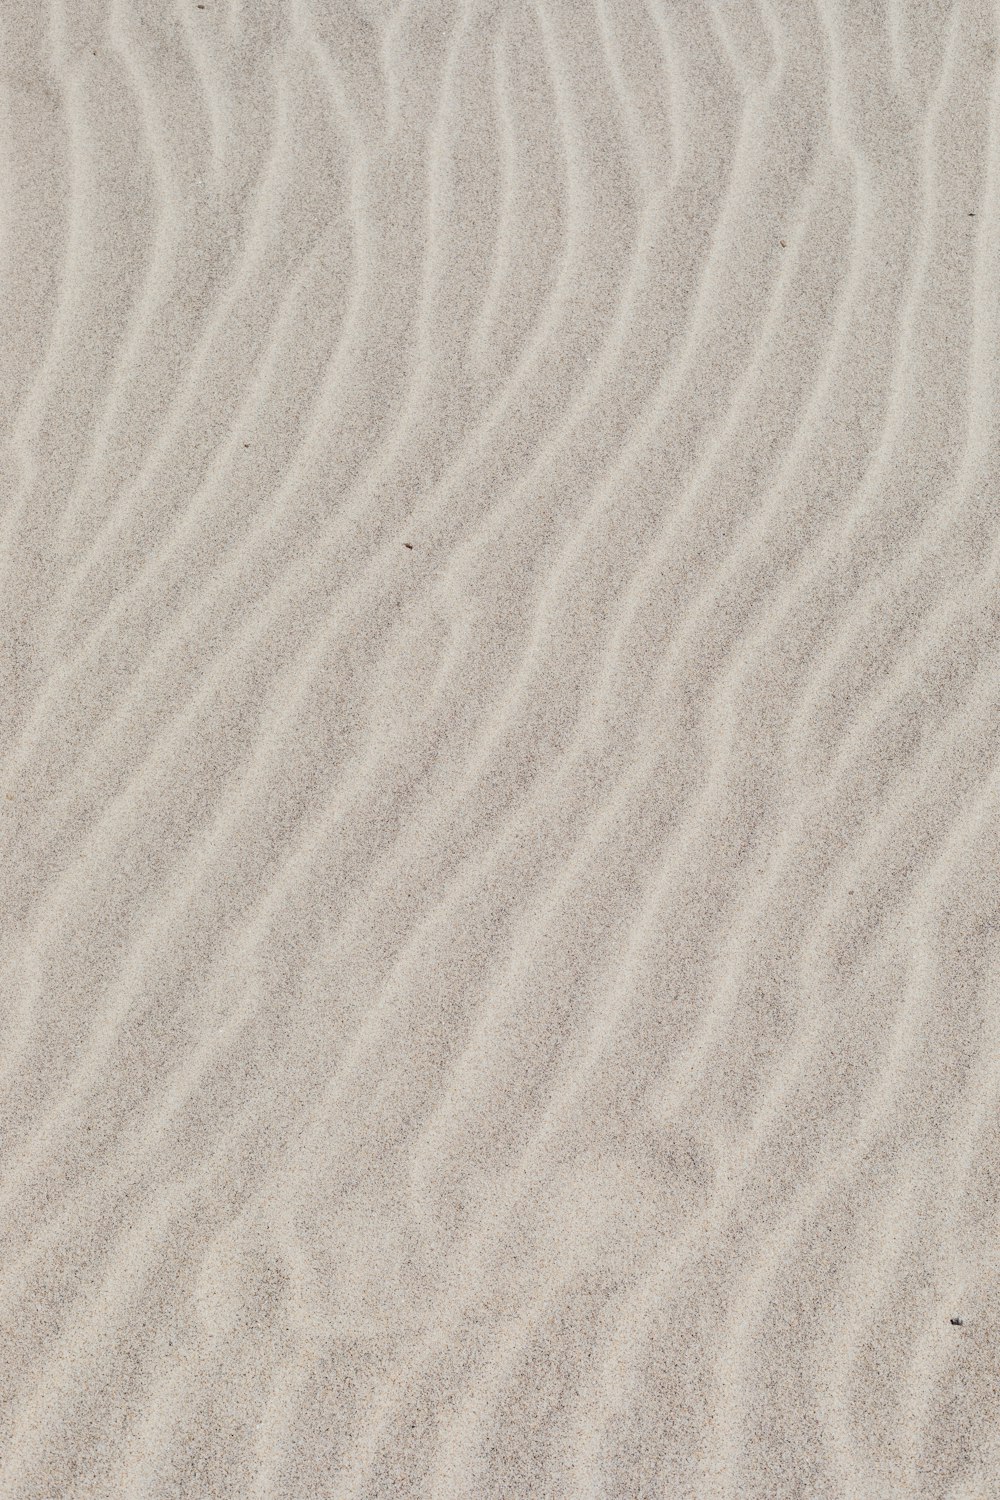 sabbia bianca con ombra di persona